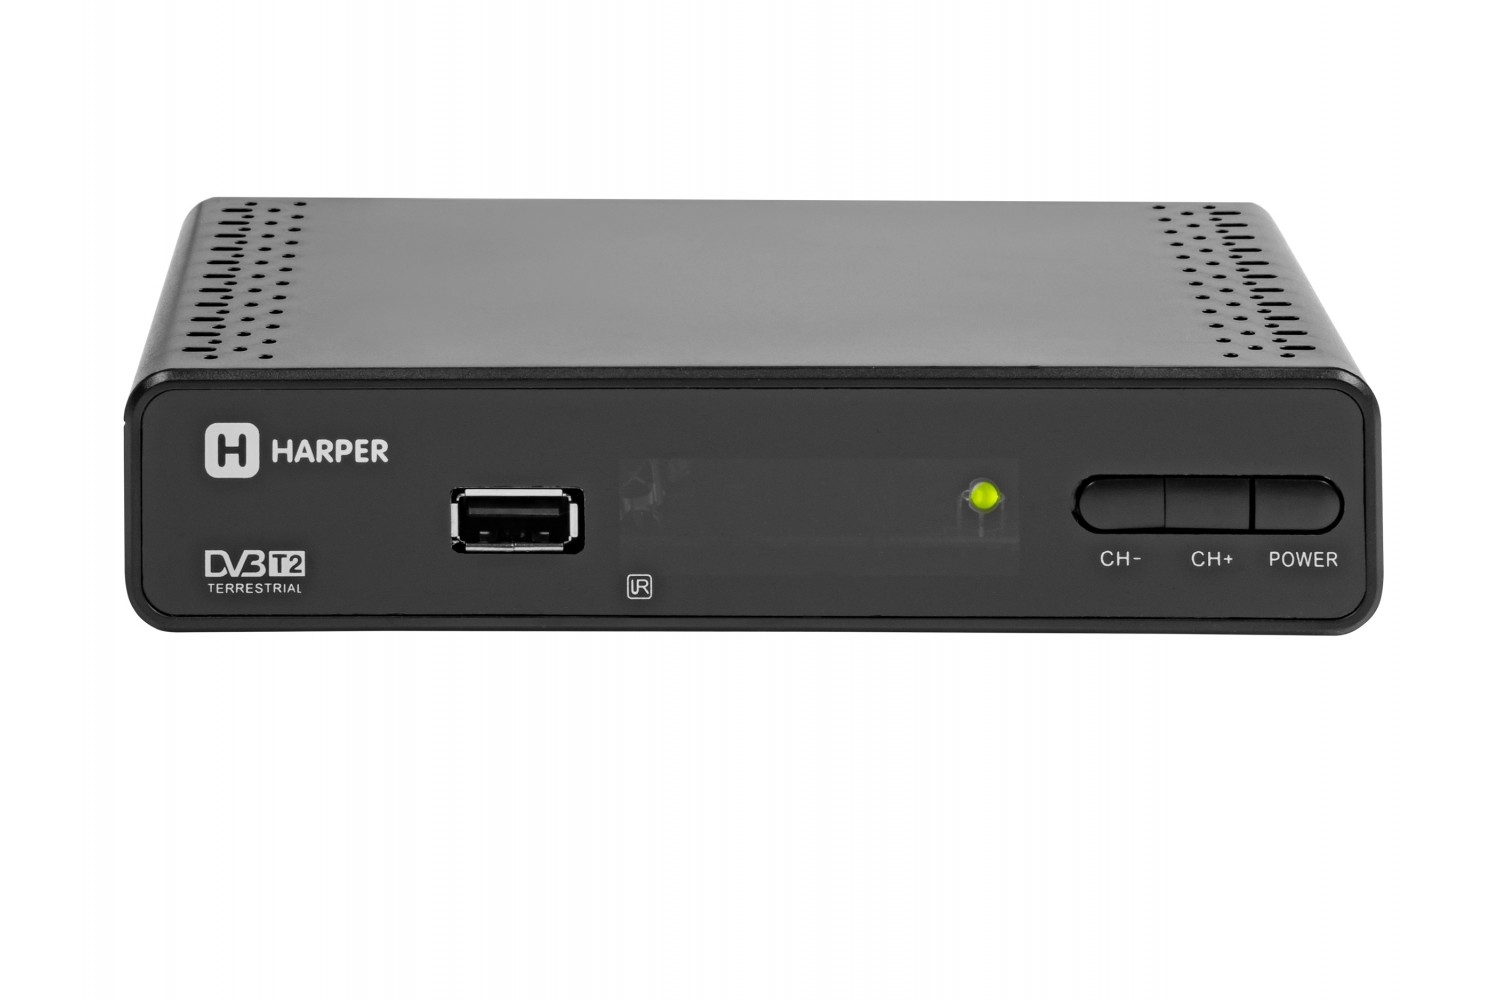  HARPER HDT2-1513 DVB-T2//MStar